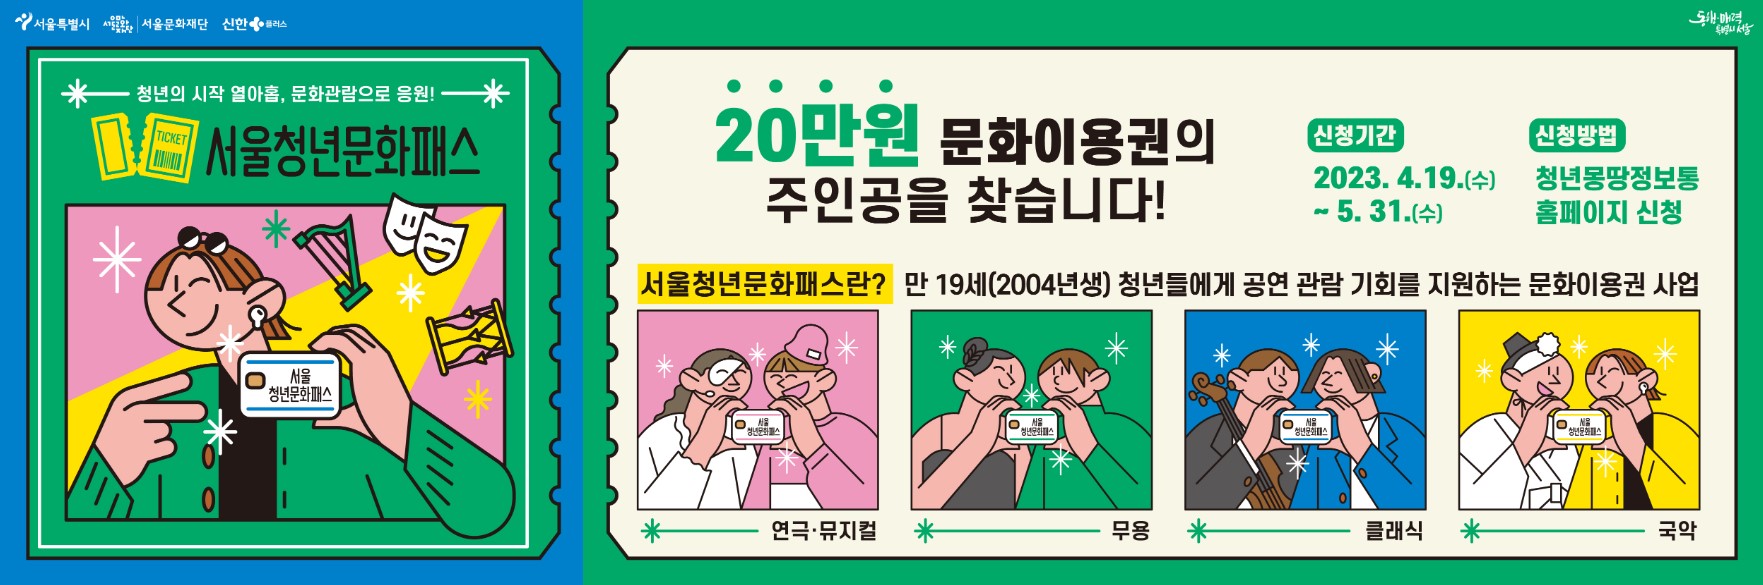 서울청년문화패스 사업 신청방법 및 내용